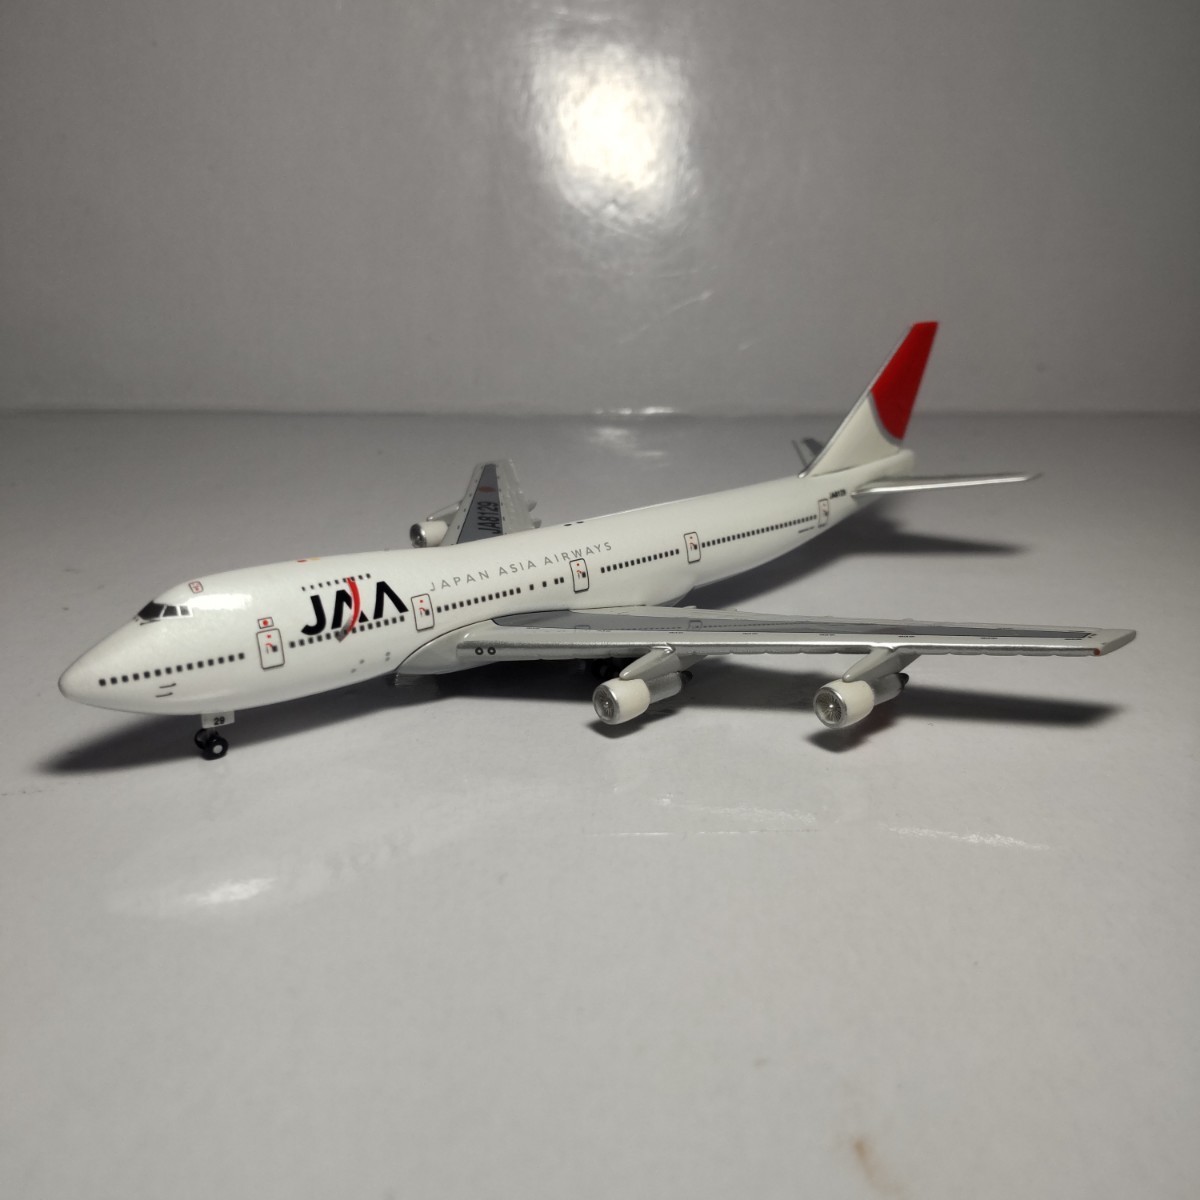 日本アジア航空（JAA）ノベルティトランプ - トランプ